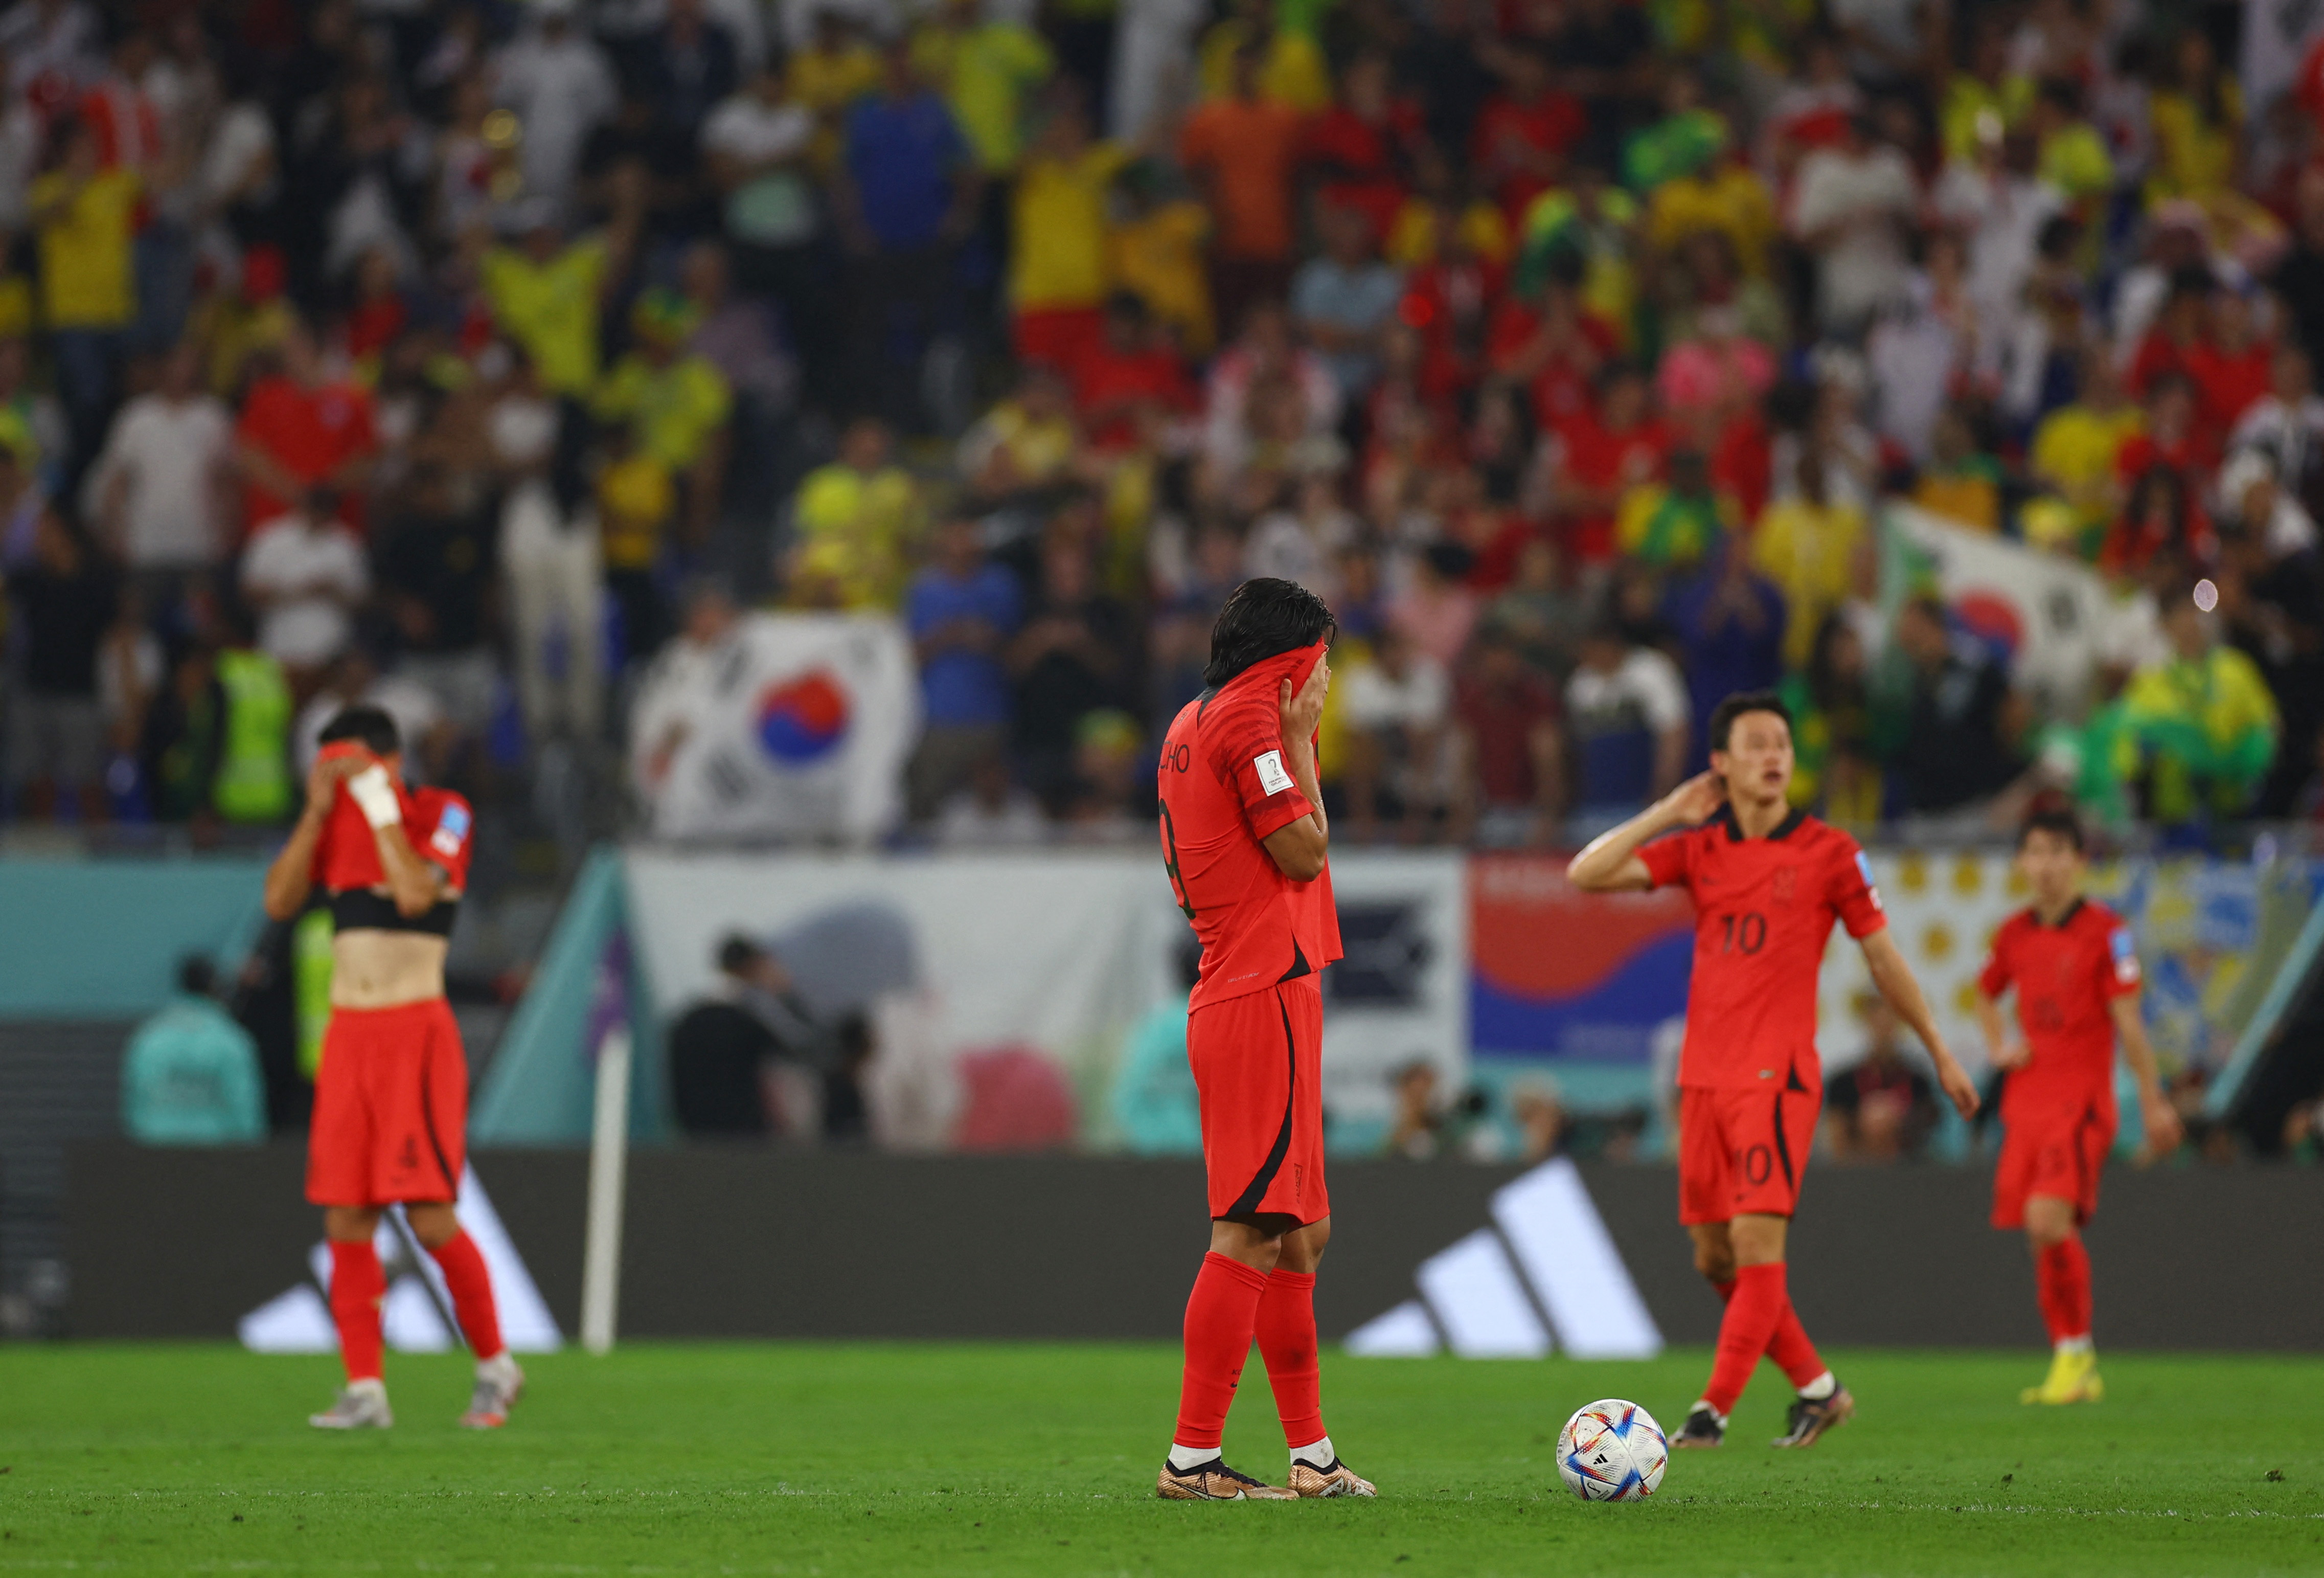 El lamento de los coreanos luego del cuarto gol de Brasil. Foto: REUTERS/Kai Pfaffenbach